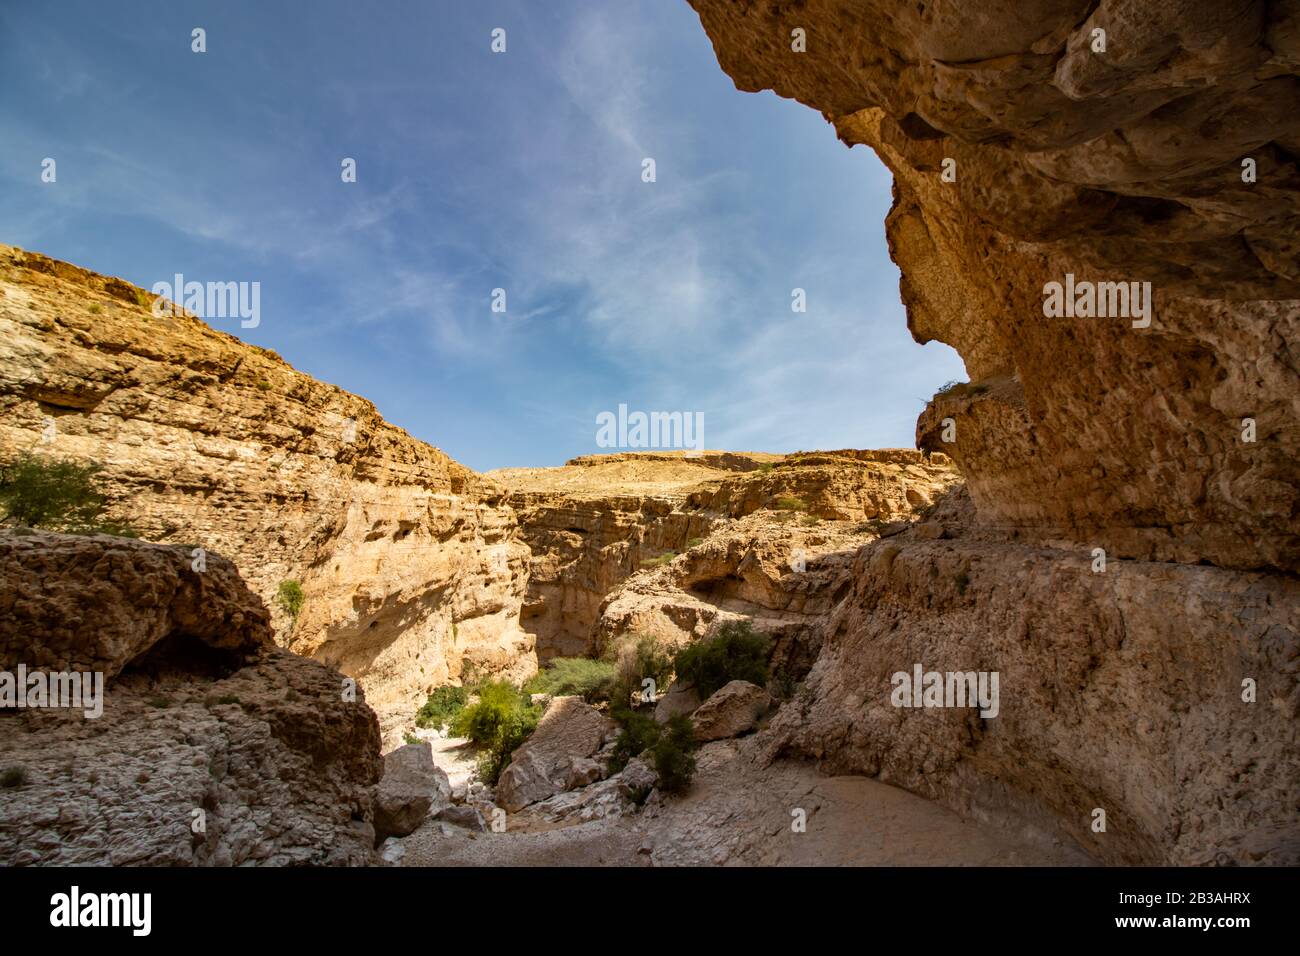 Inside at canyon of Wadi Bani Khalid near Bidiyya in Oman Stock Photo